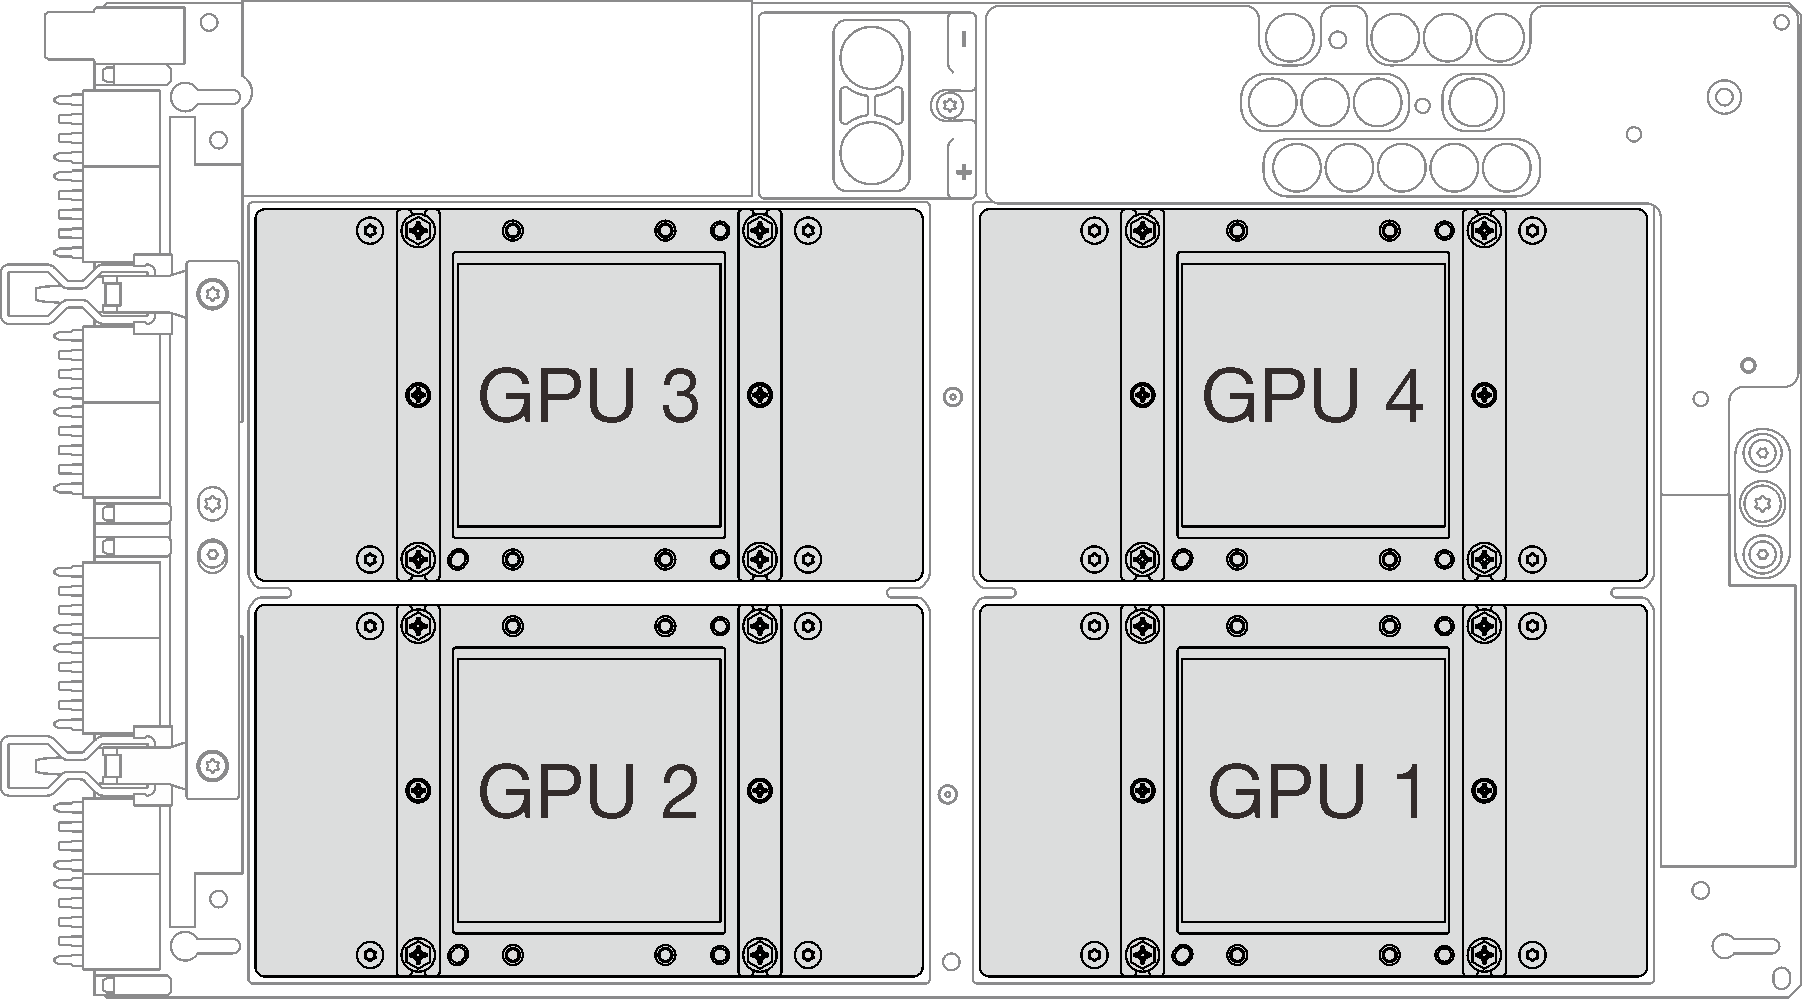 GPU numbering